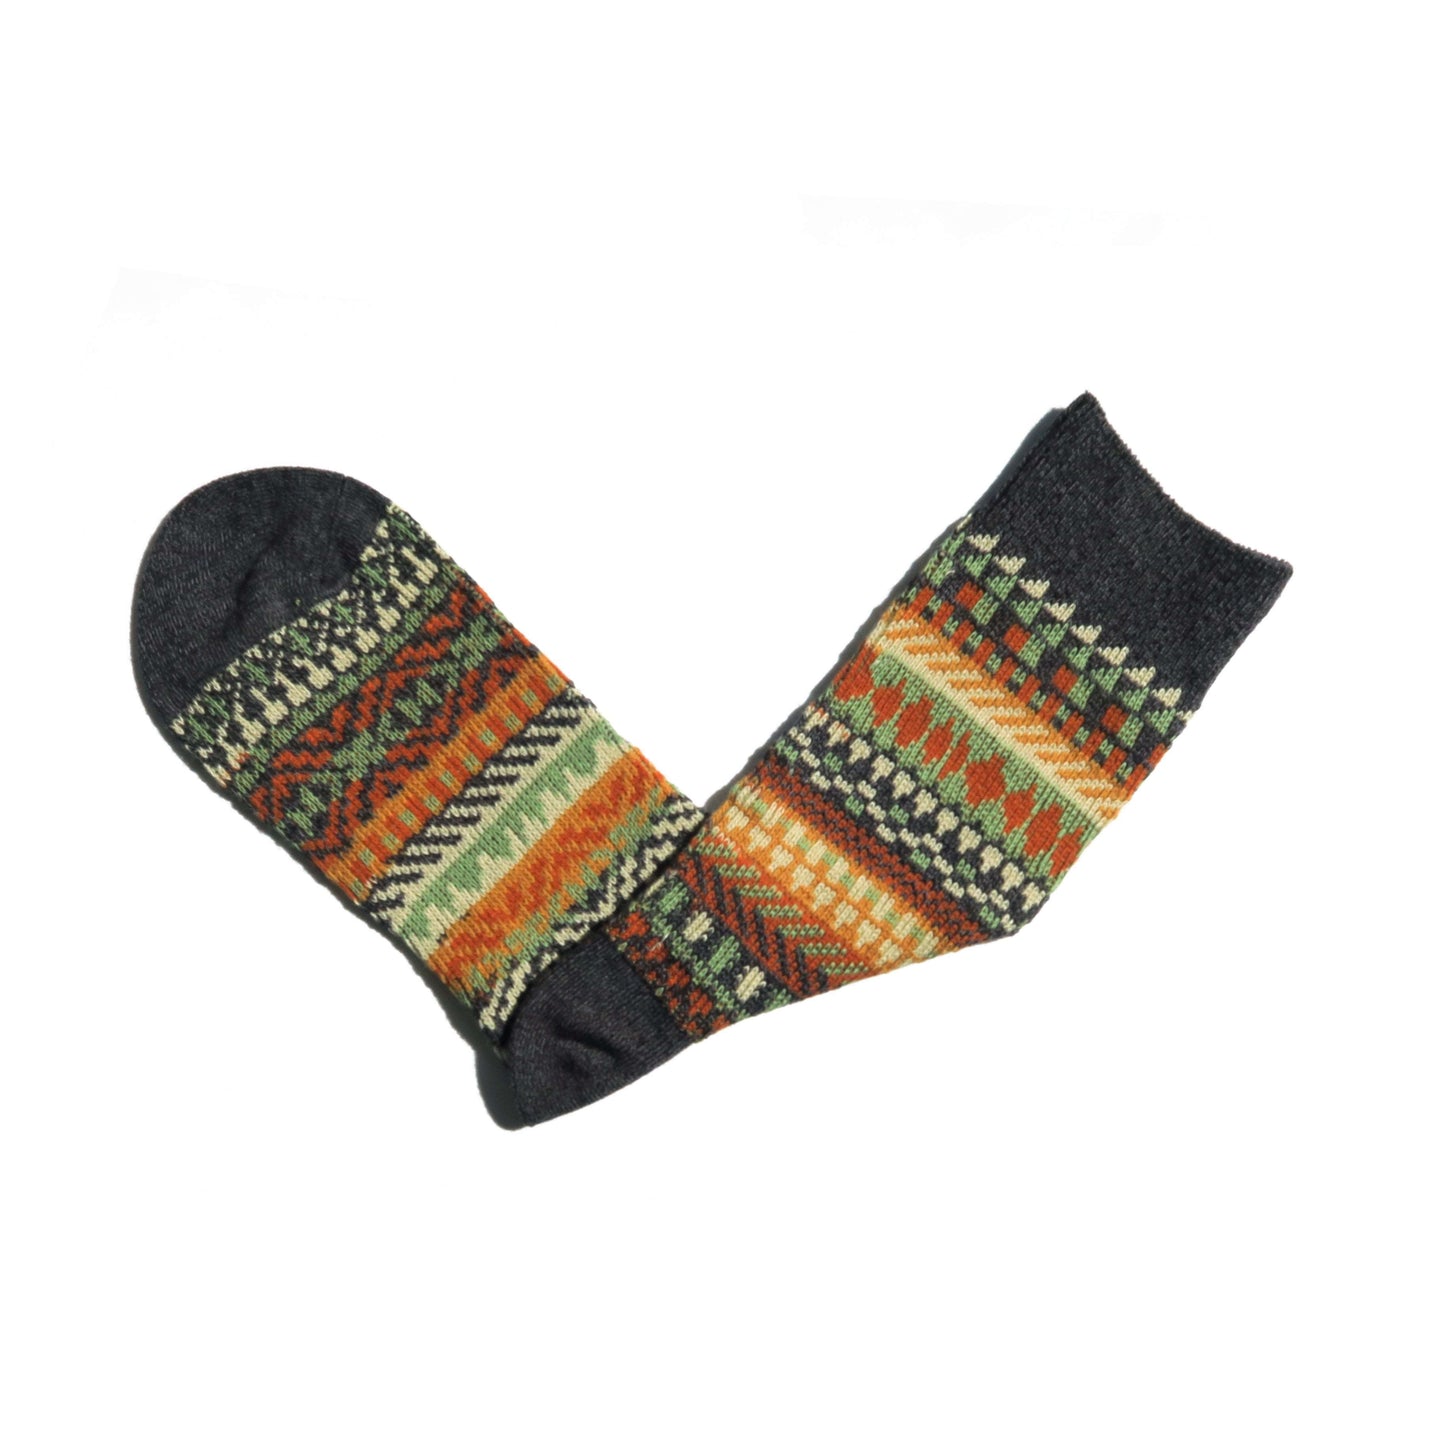 kizune black tribal socks